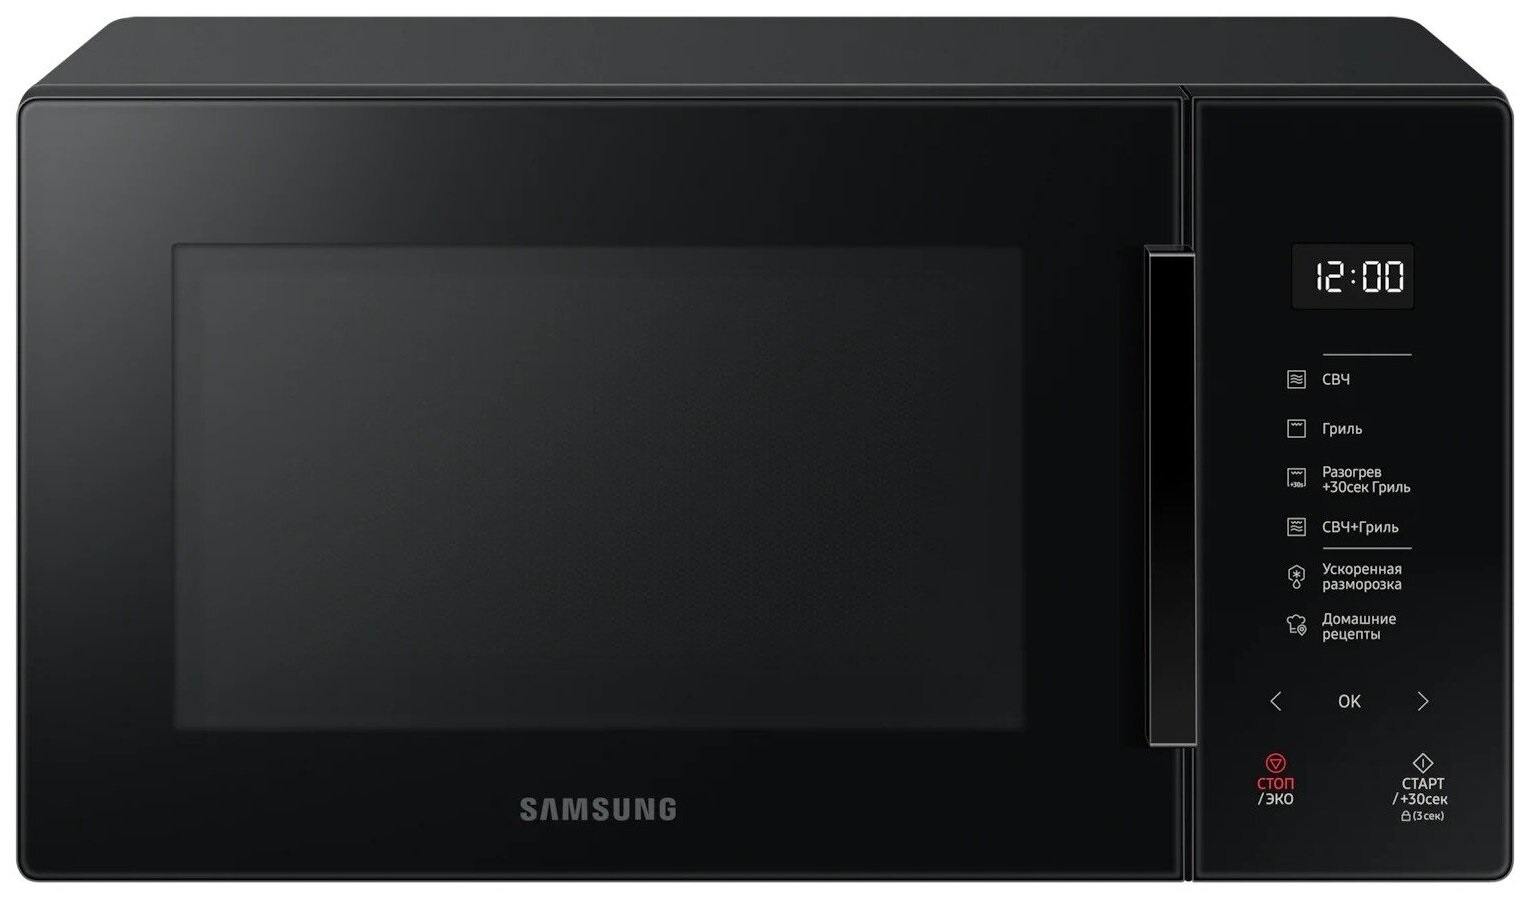 Микроволновая печь Samsung MG23T5018AK, объём 23 л, 800 Вт, гриль, электронное управление, дисплей, сенсорные переключатели